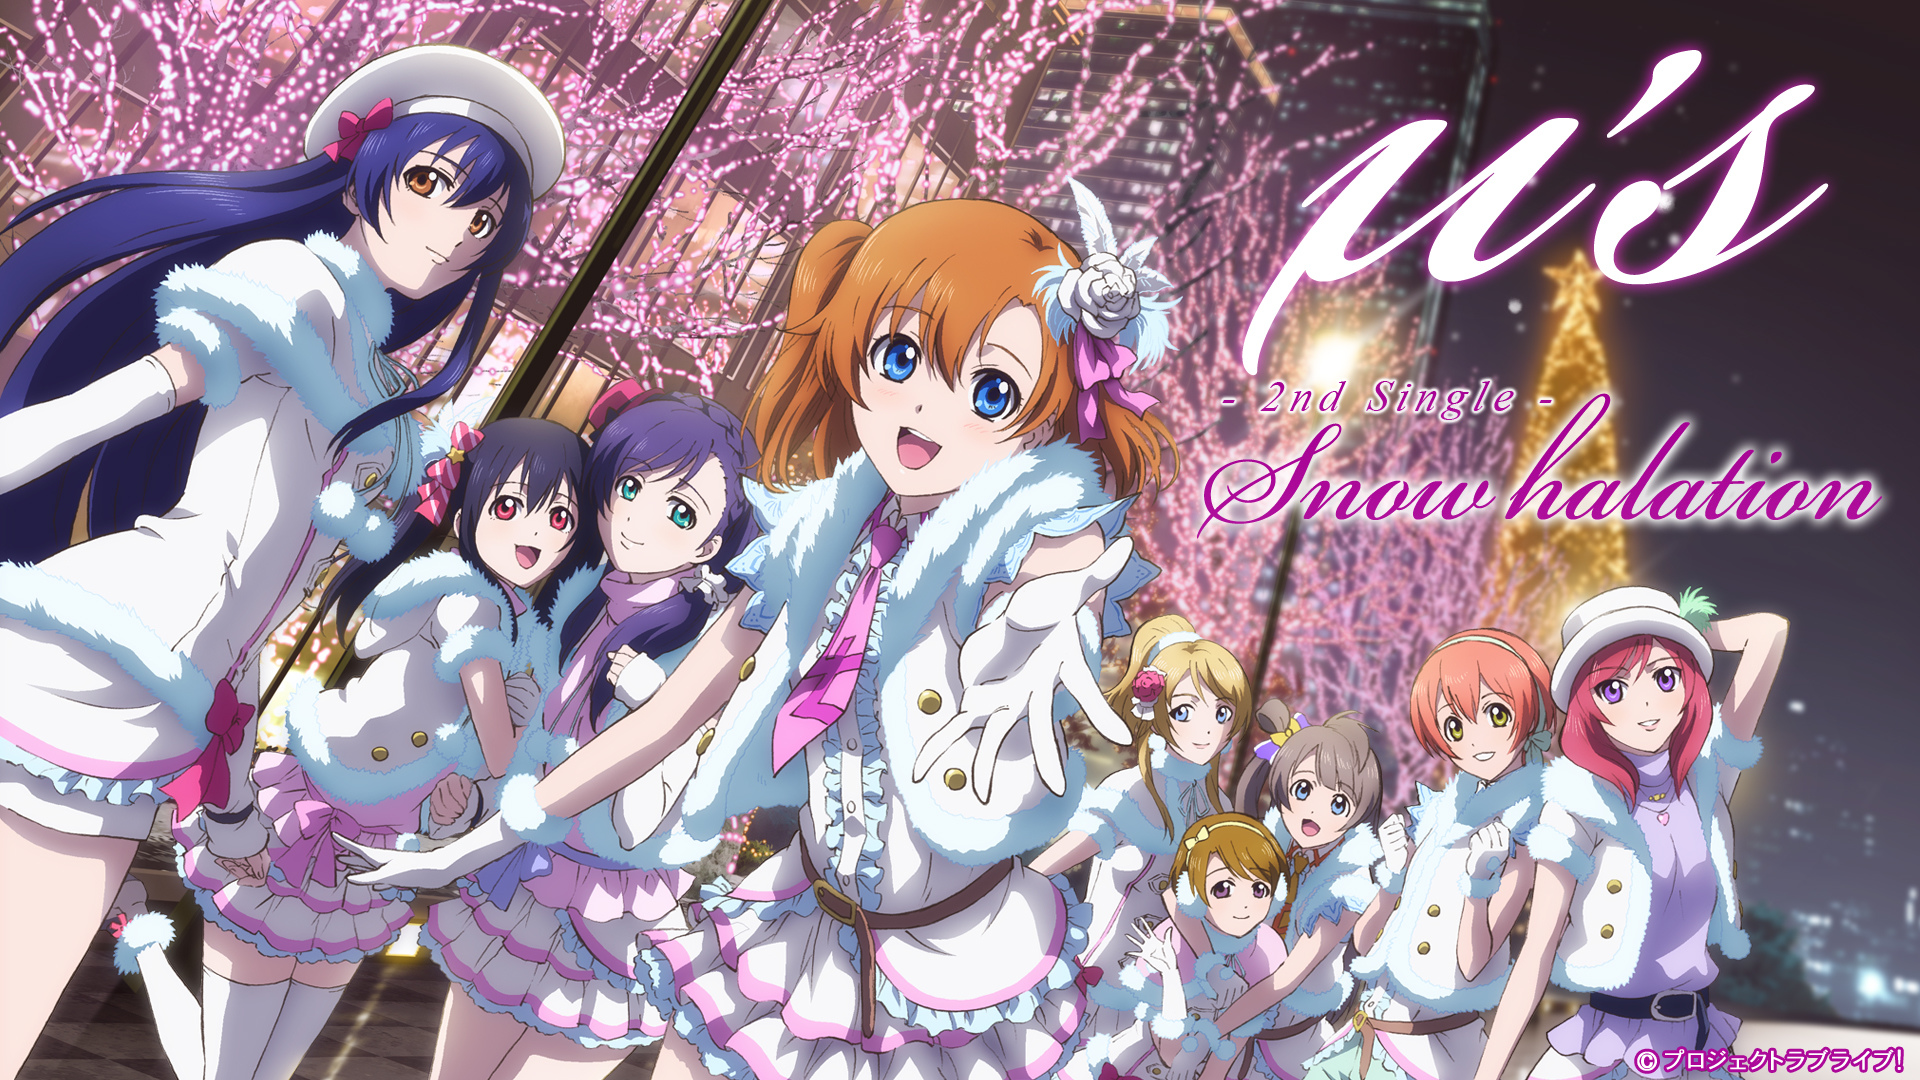 Snow Halation - Love Live! School Idol Project Wallpaper (39939905) - Fanpop